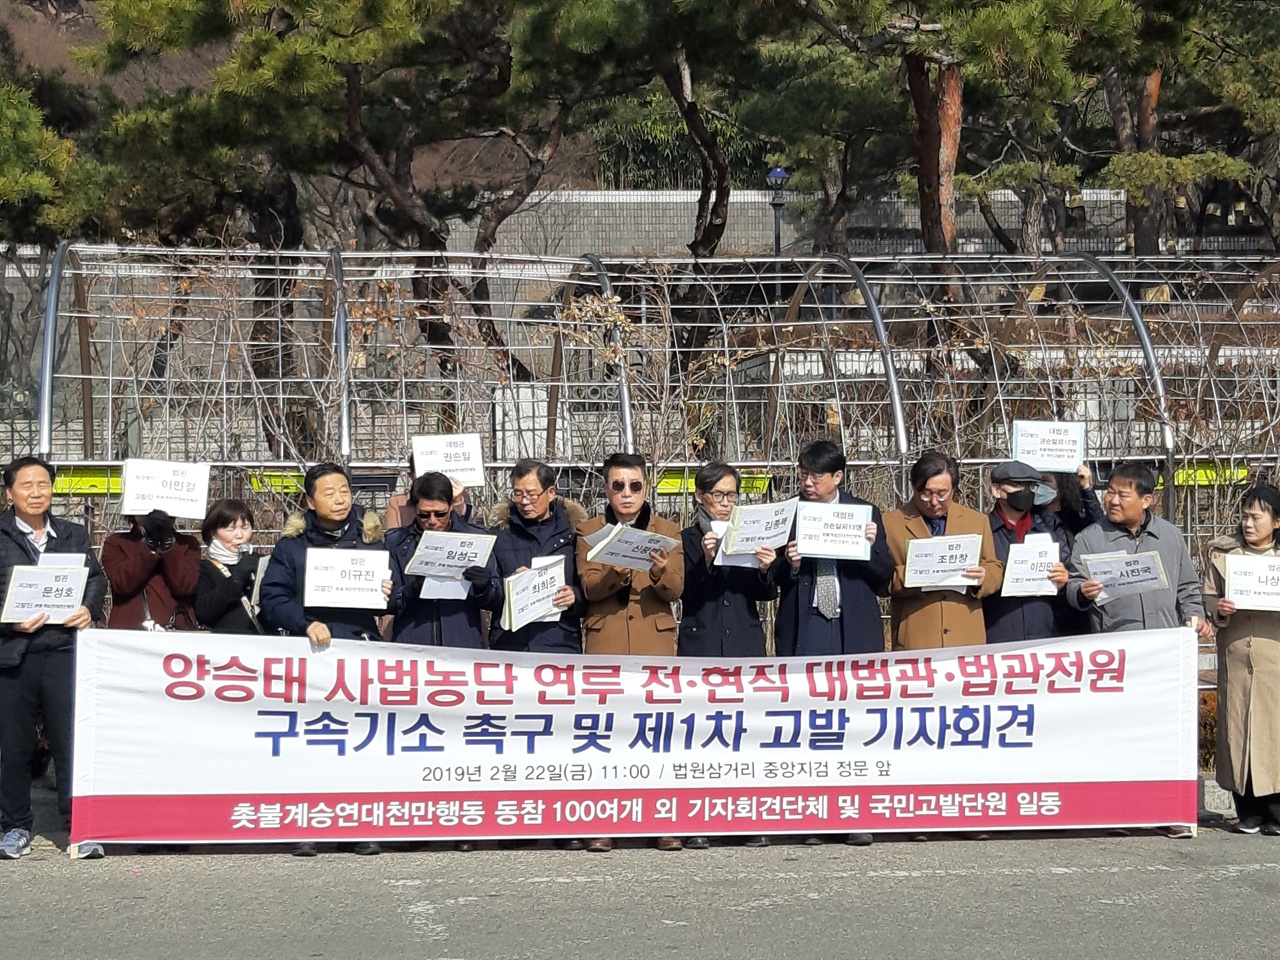 22일 정의연대등 시민단체 회원들은 서초동 서울중앙지방검찰청앞에서 기자회견을 갖고 양승태 사법농단 연루판사들에 대해 구속기소를 촉구하였다. 